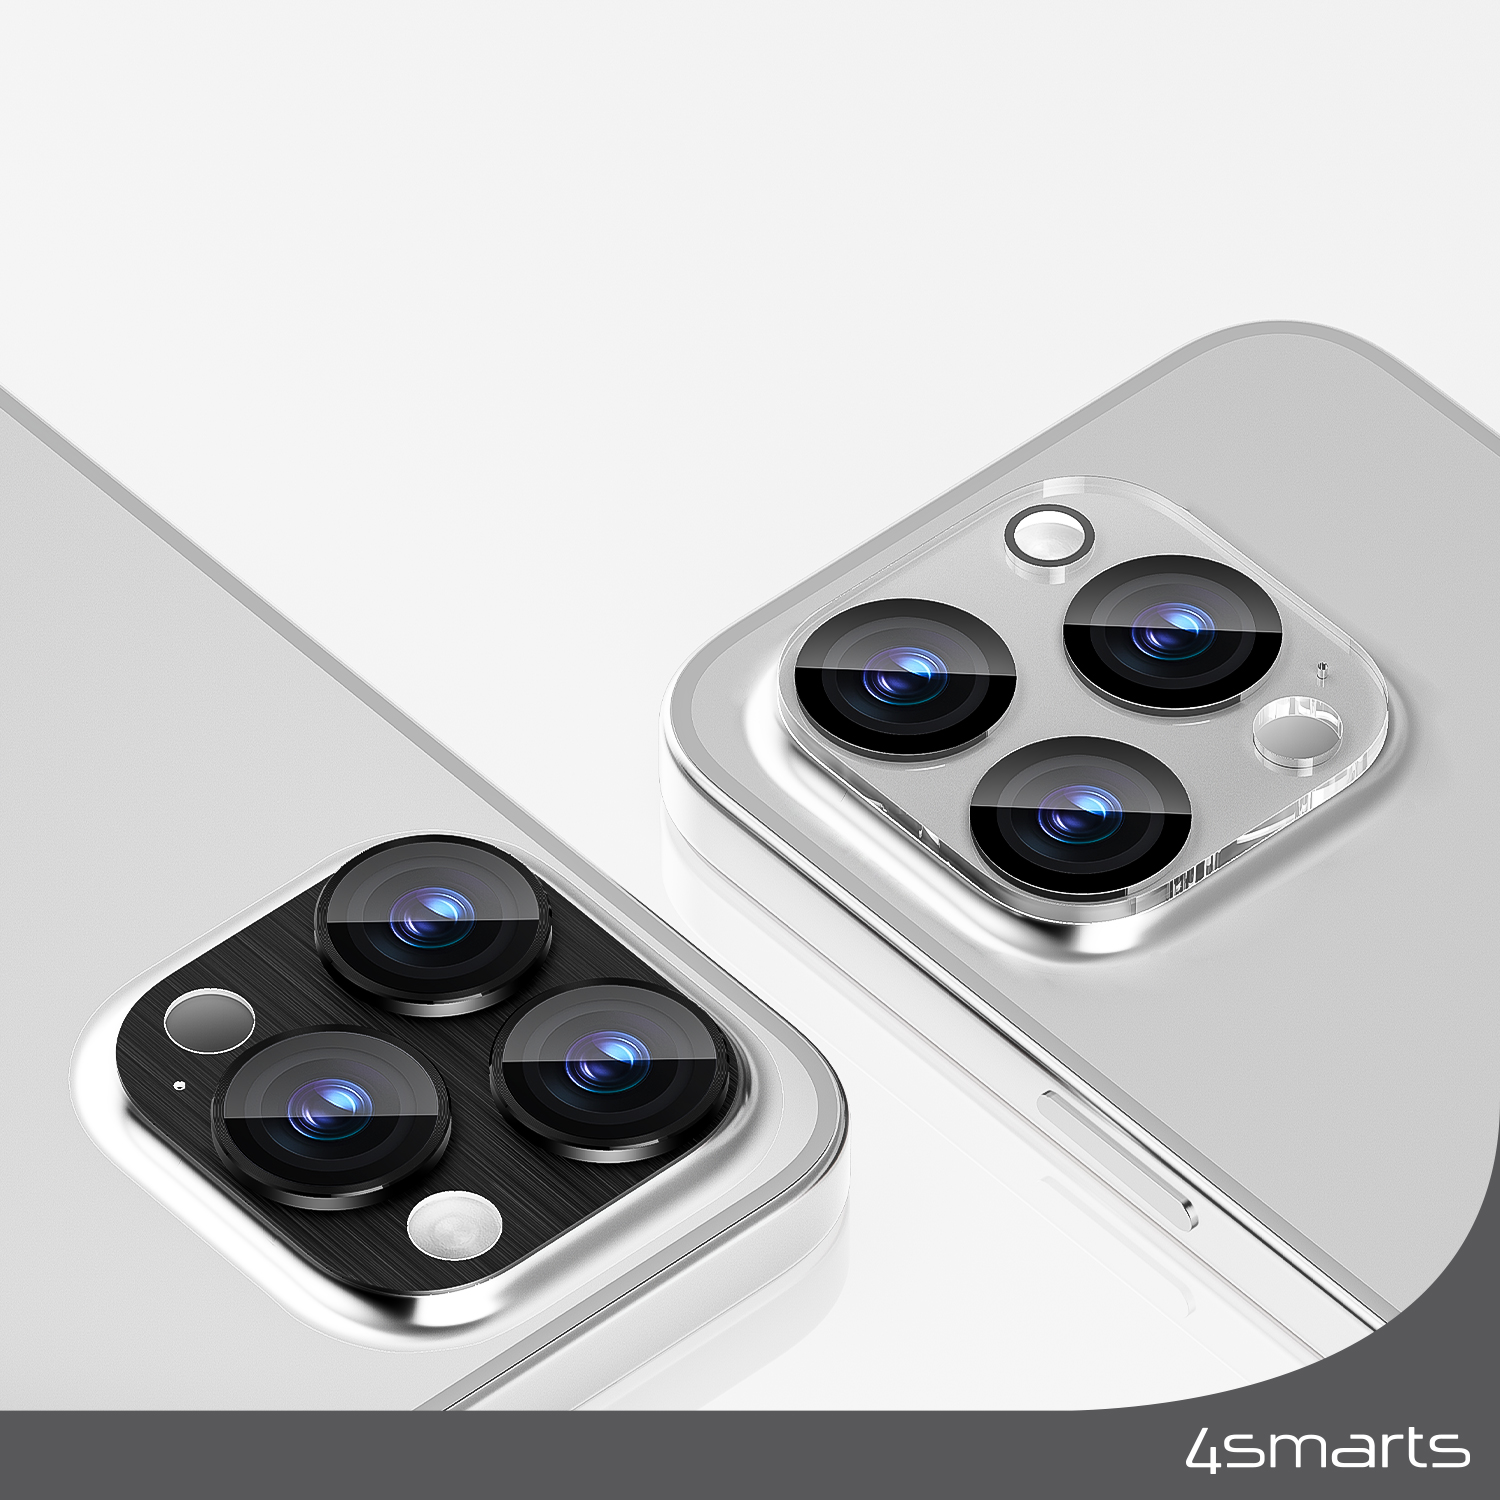 Das 4smarts Lens Protector StyleGlass für Apple iPhone 15 Pro / 15 Pro Max 2er Set ist in 2 Farbvarianten erhältlich und wurde passgenau für die 3 Kameralinsen auf der Rückseite deines iPhone entwickelt.